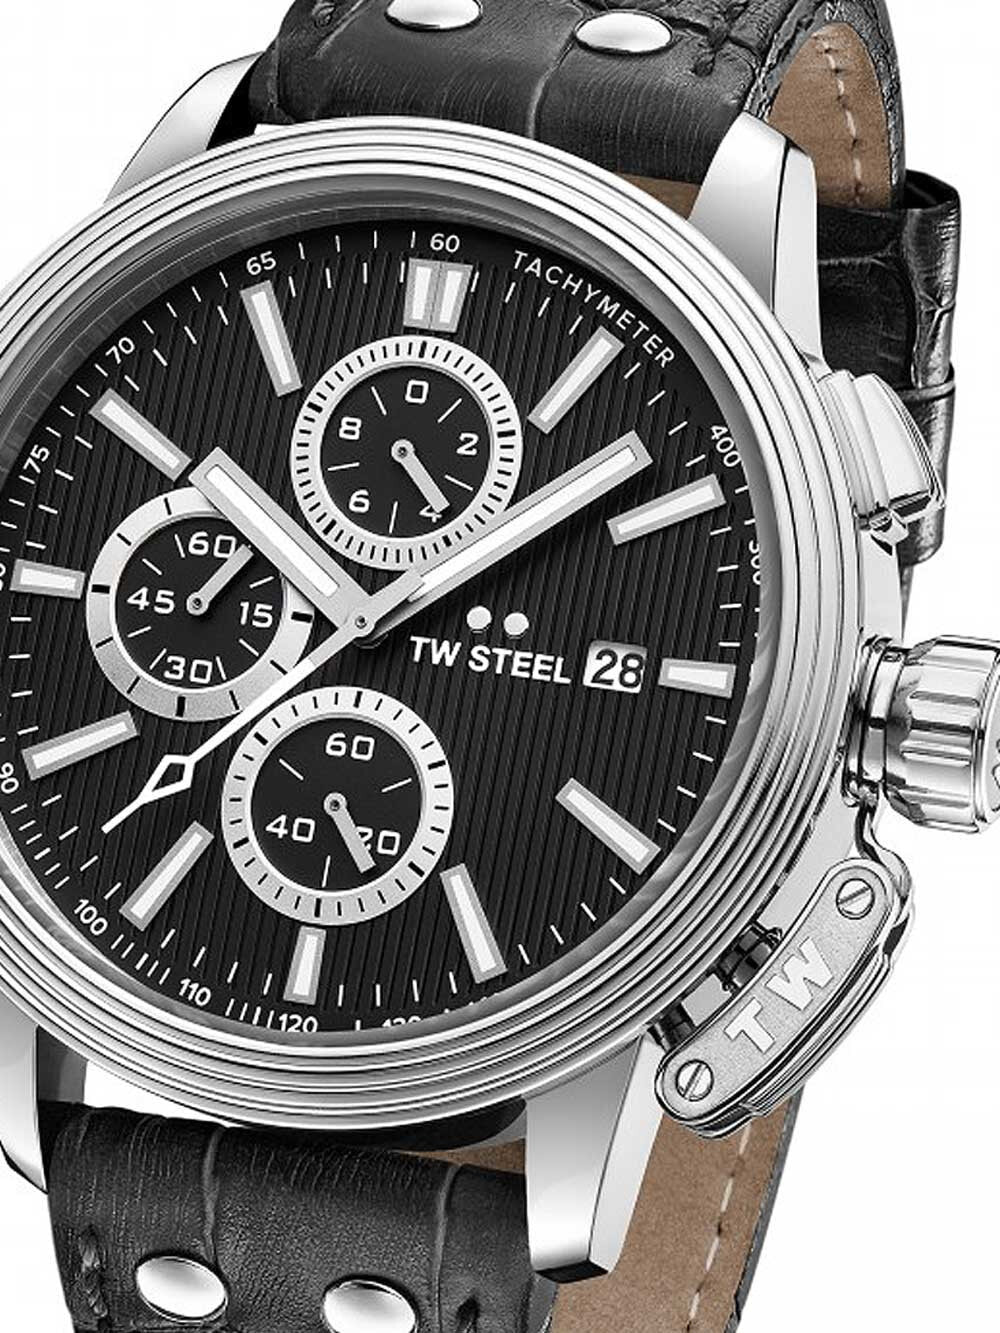 Мужские наручные часы с черным кожаным ремешком TW Steel CE7002 Adesso Chronograph 48mm 10 ATM